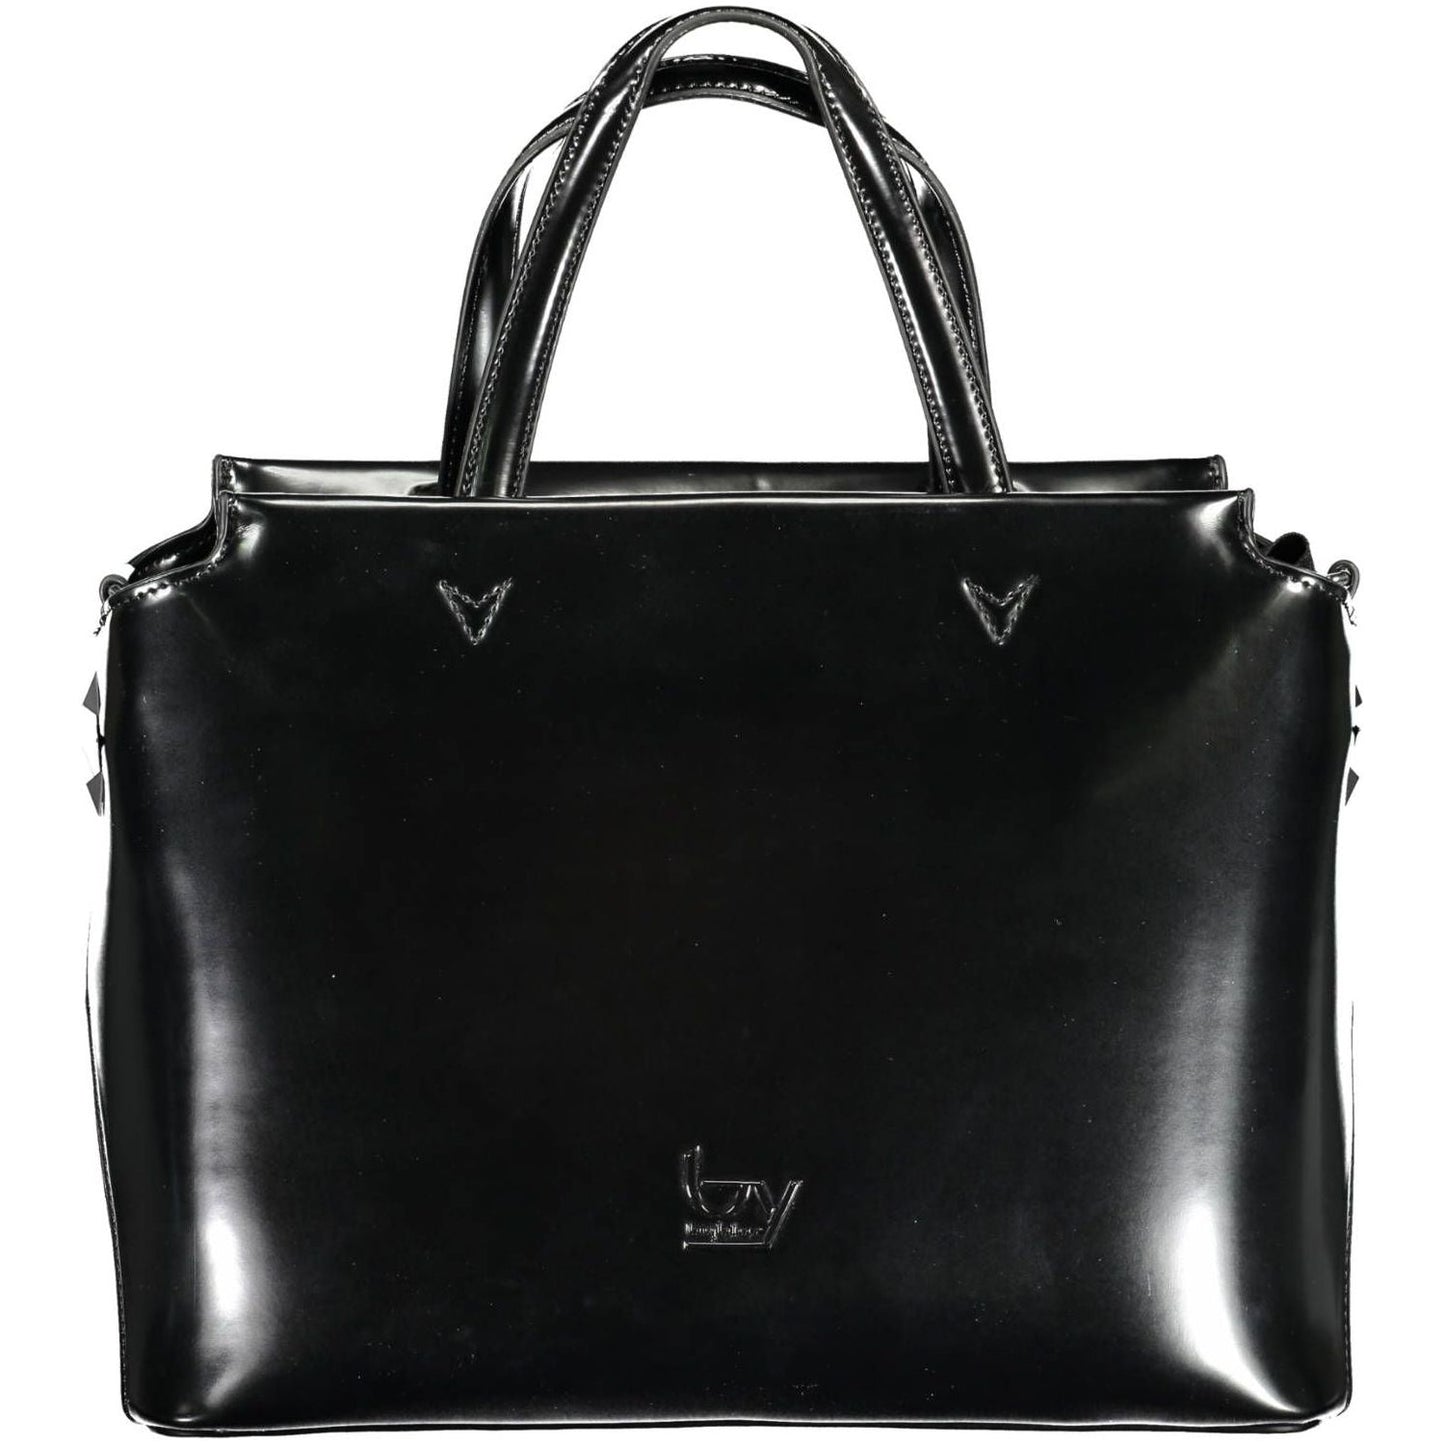 BYBLOS Elegant Black Two-Handle Bag with Contrasting Details elegant-black-two-handle-bag-with-contrasting-details